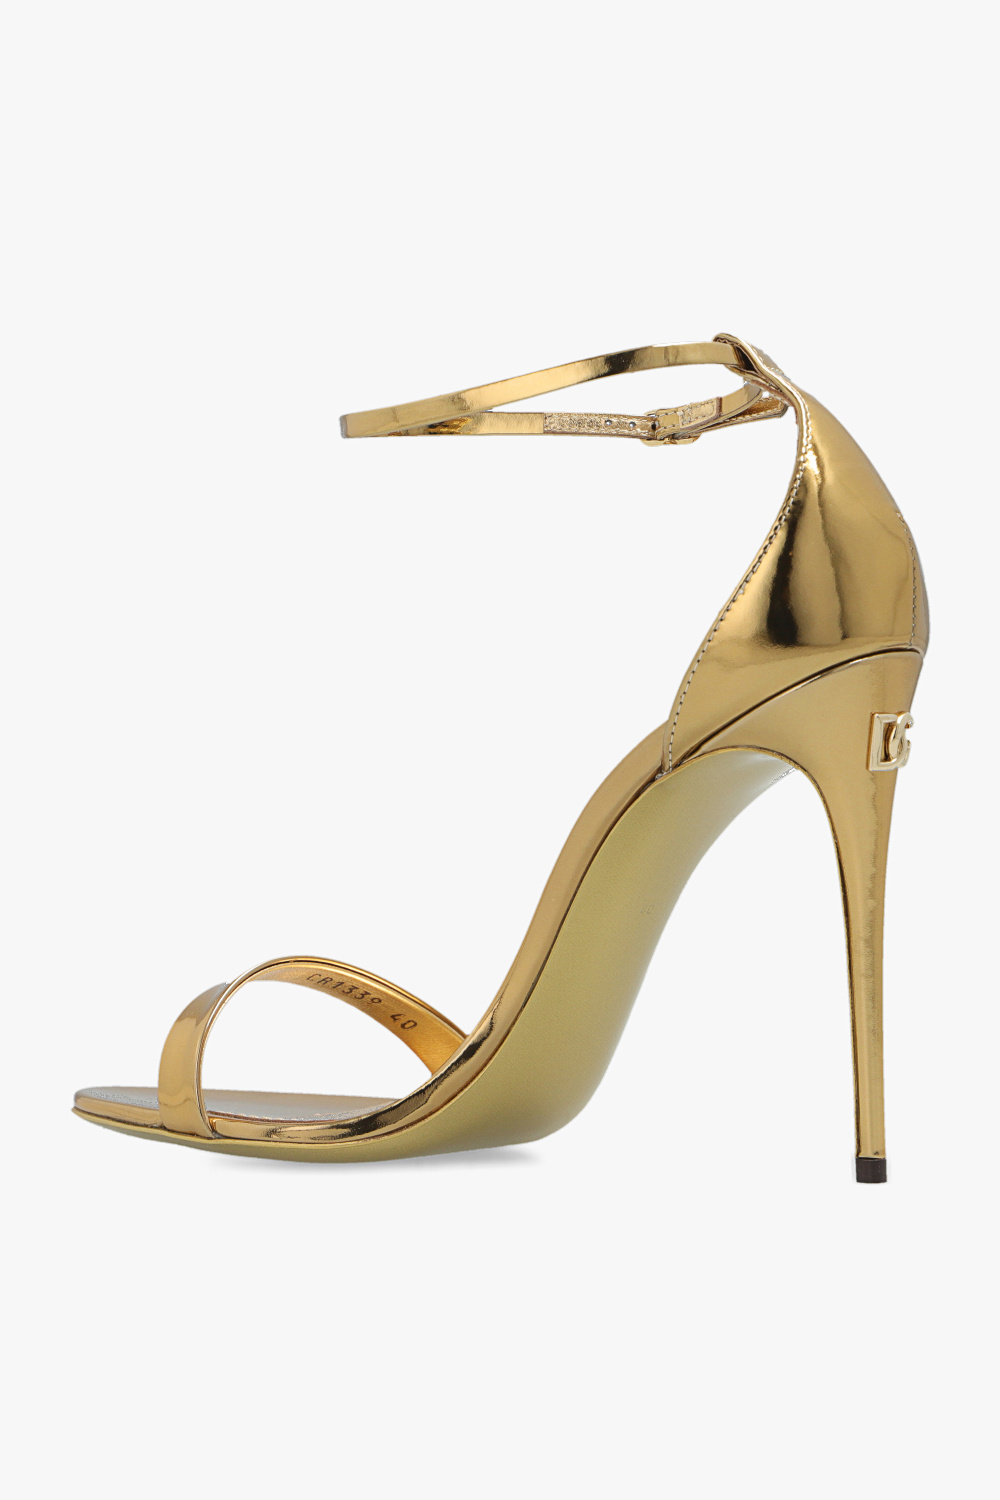 dolce gabbana dg logo belt bag item ‘Keira’ heeled sandals